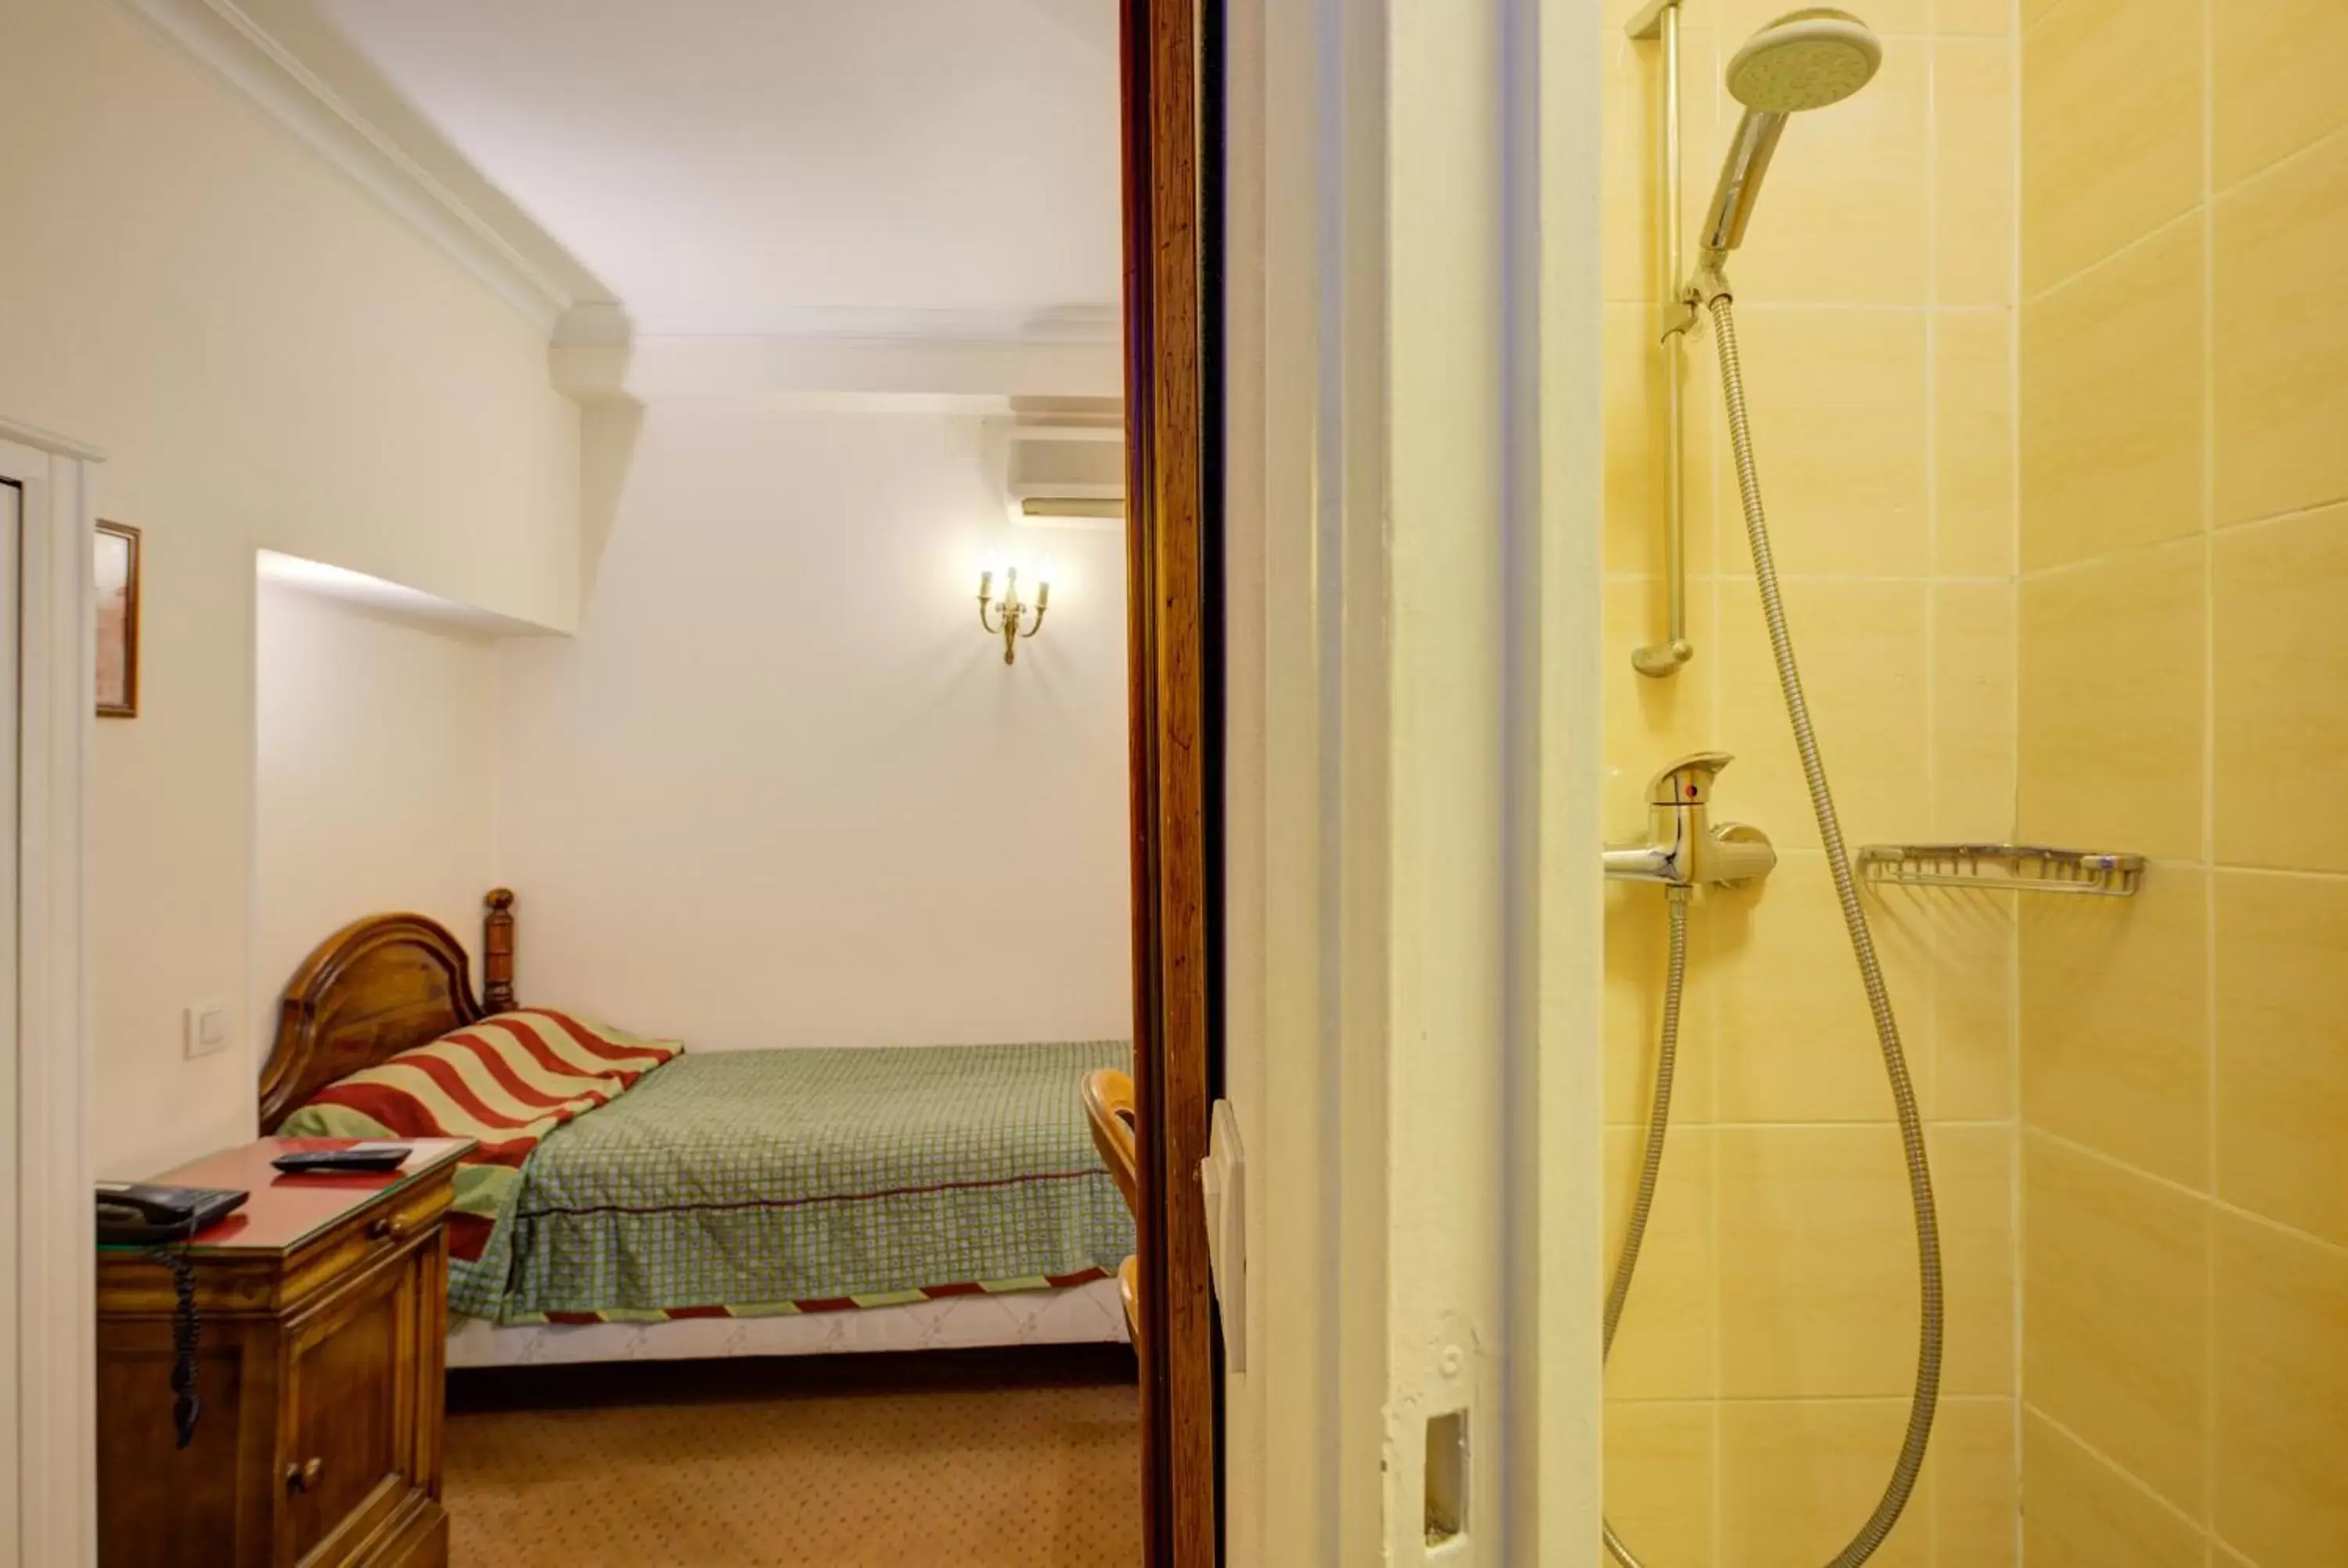 Shower, Bathroom in Hôtel La Sanguine